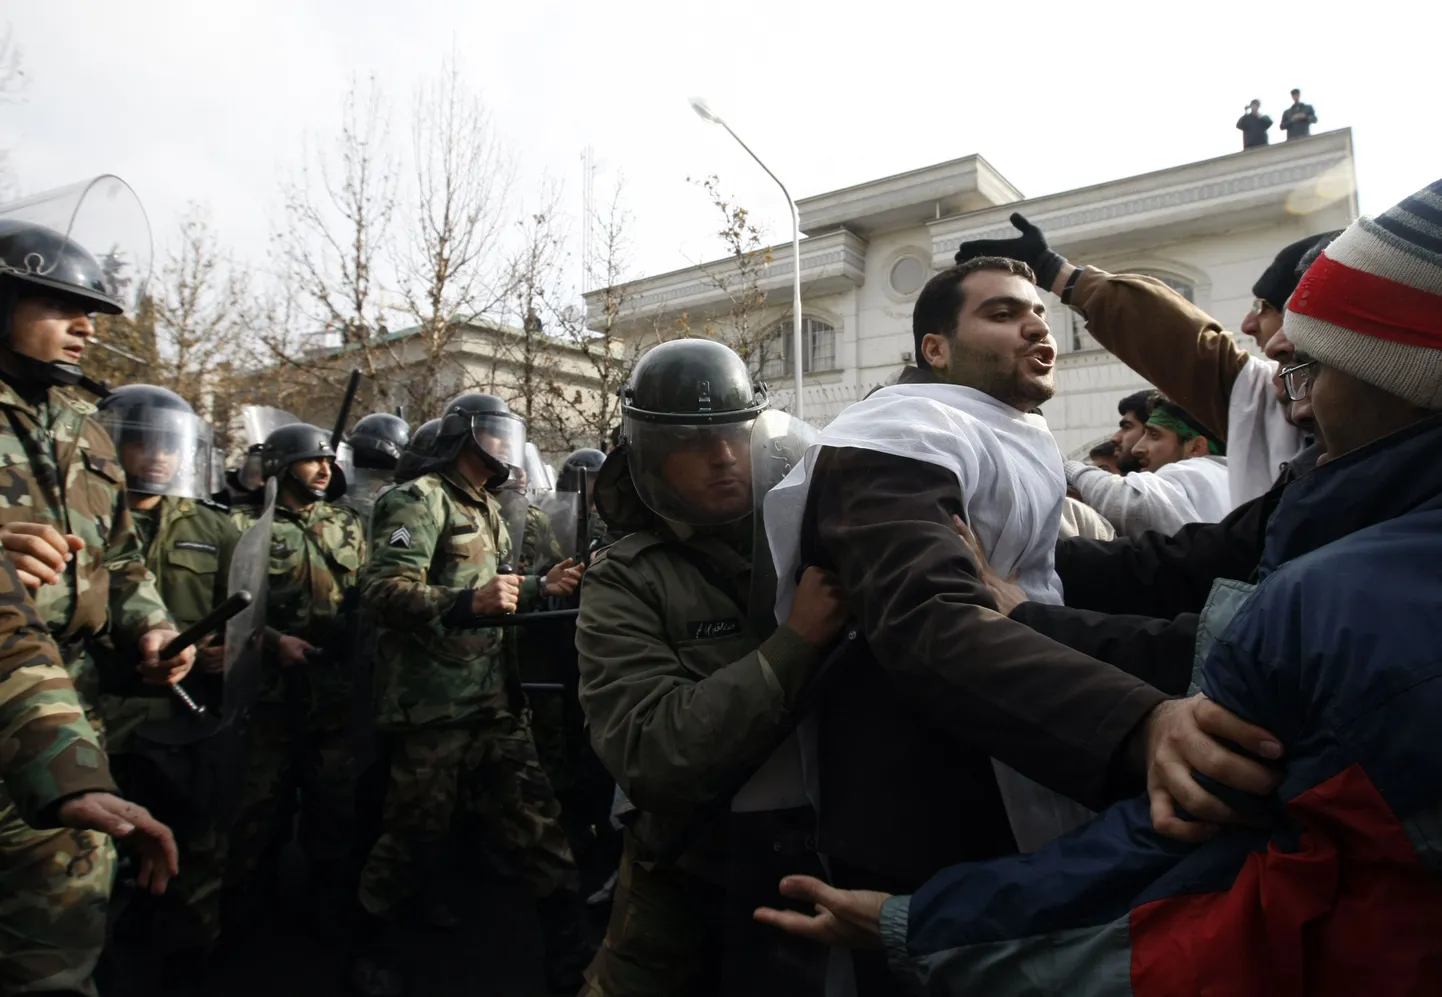 Iraani märulipolitsei ajamas laiali ebaseaduslikku meeleavaldust.